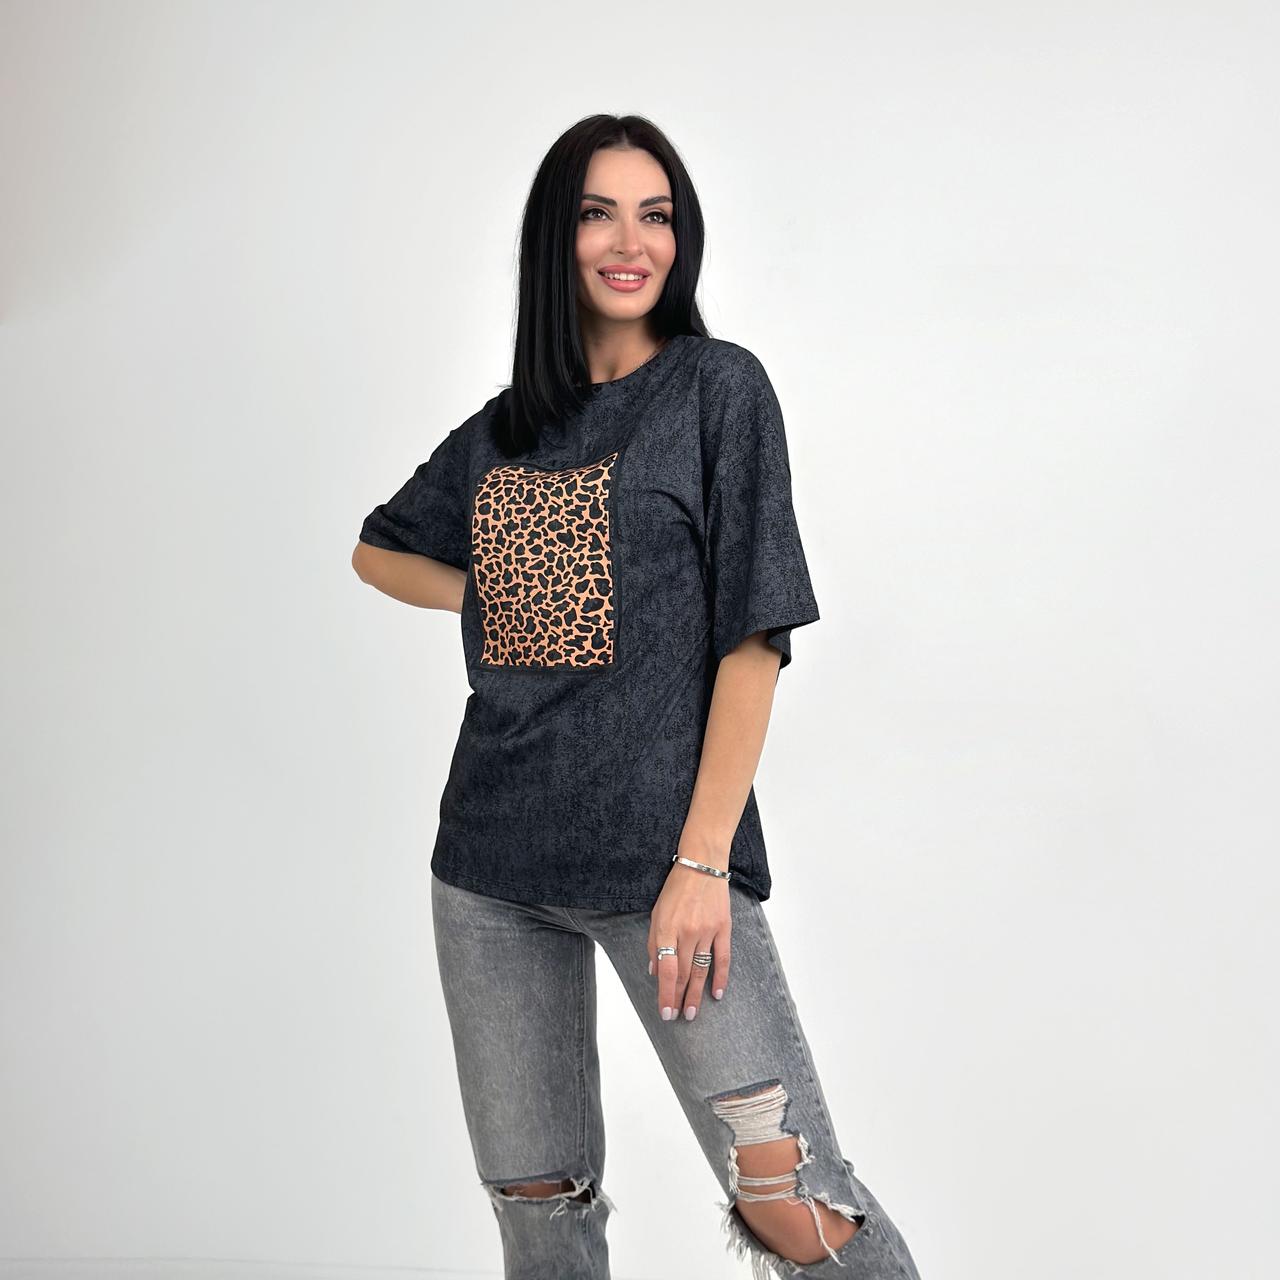 Жіноча футболка з анімалістичним принтом "Roar" (Турція) оптом від виробника | Норма і батал